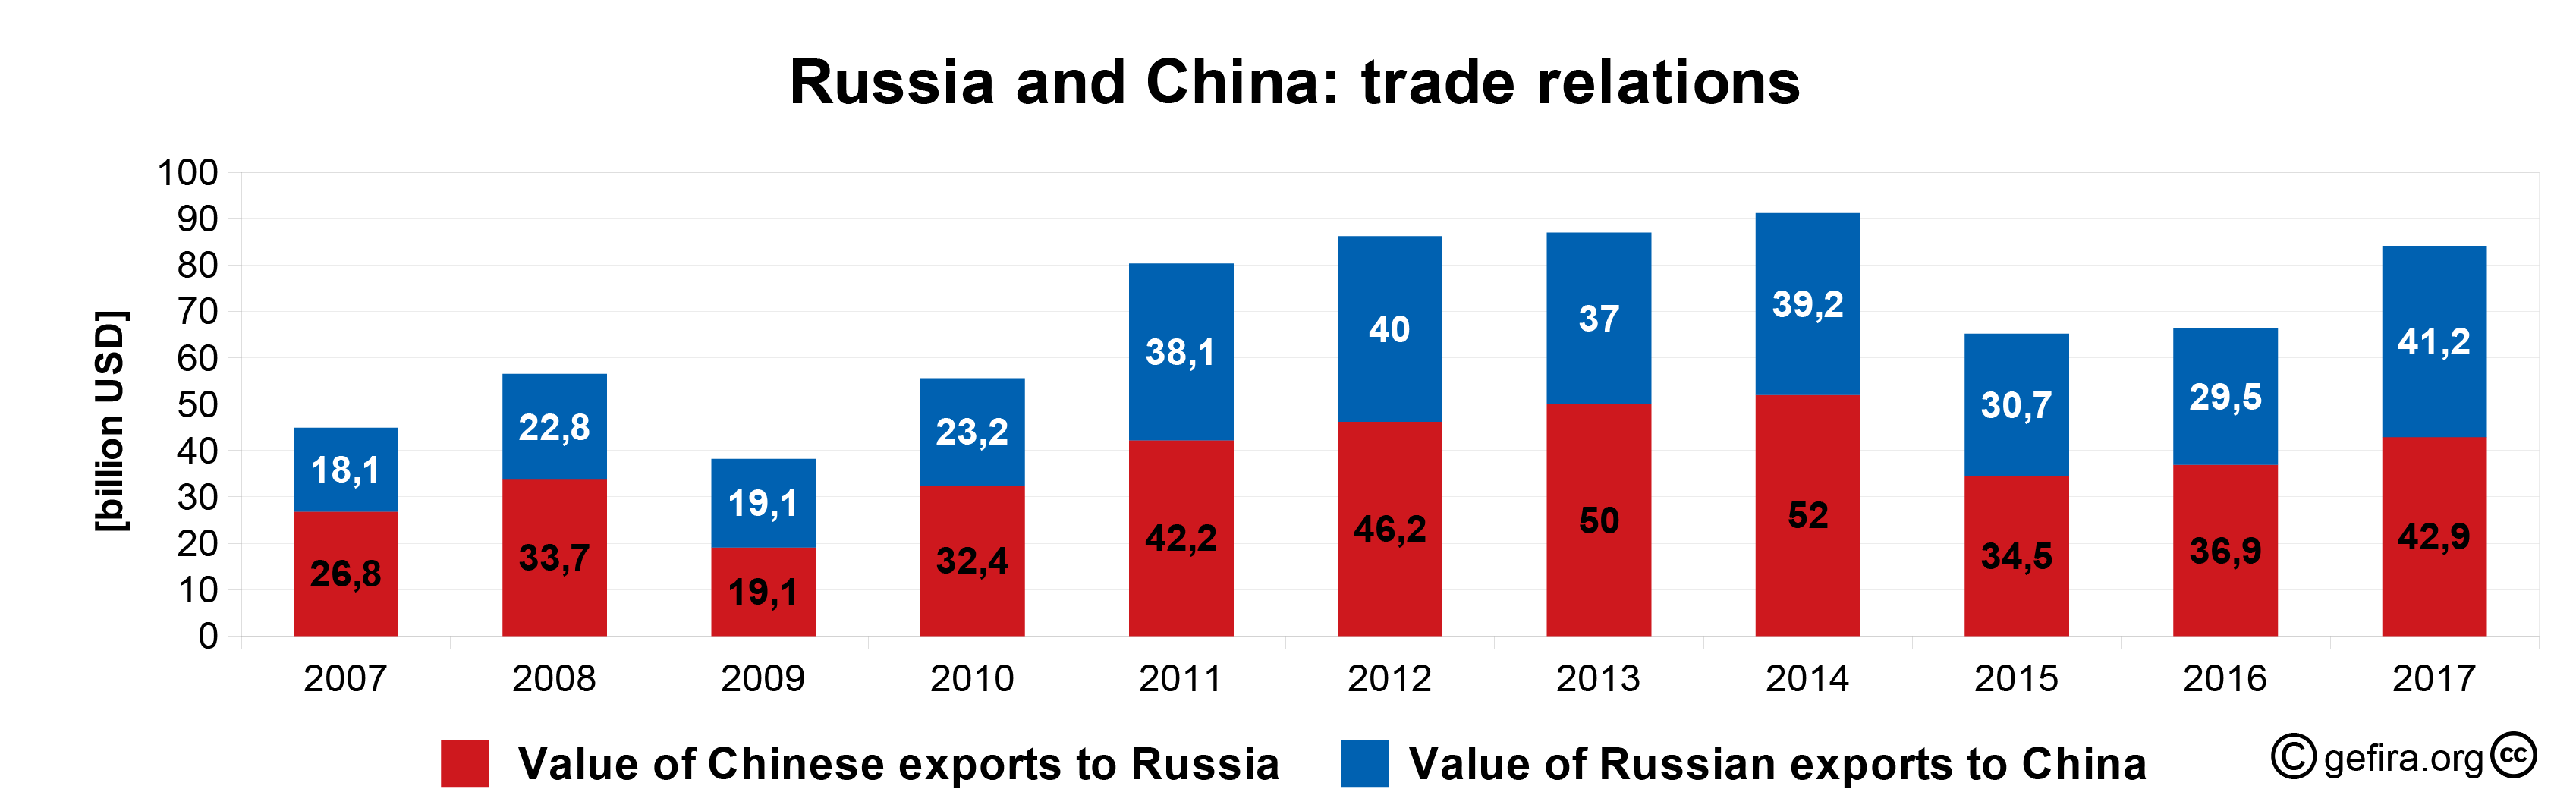 В прошлое десятилетие Китай всё больше и больше увеличивал закупки русской нефти